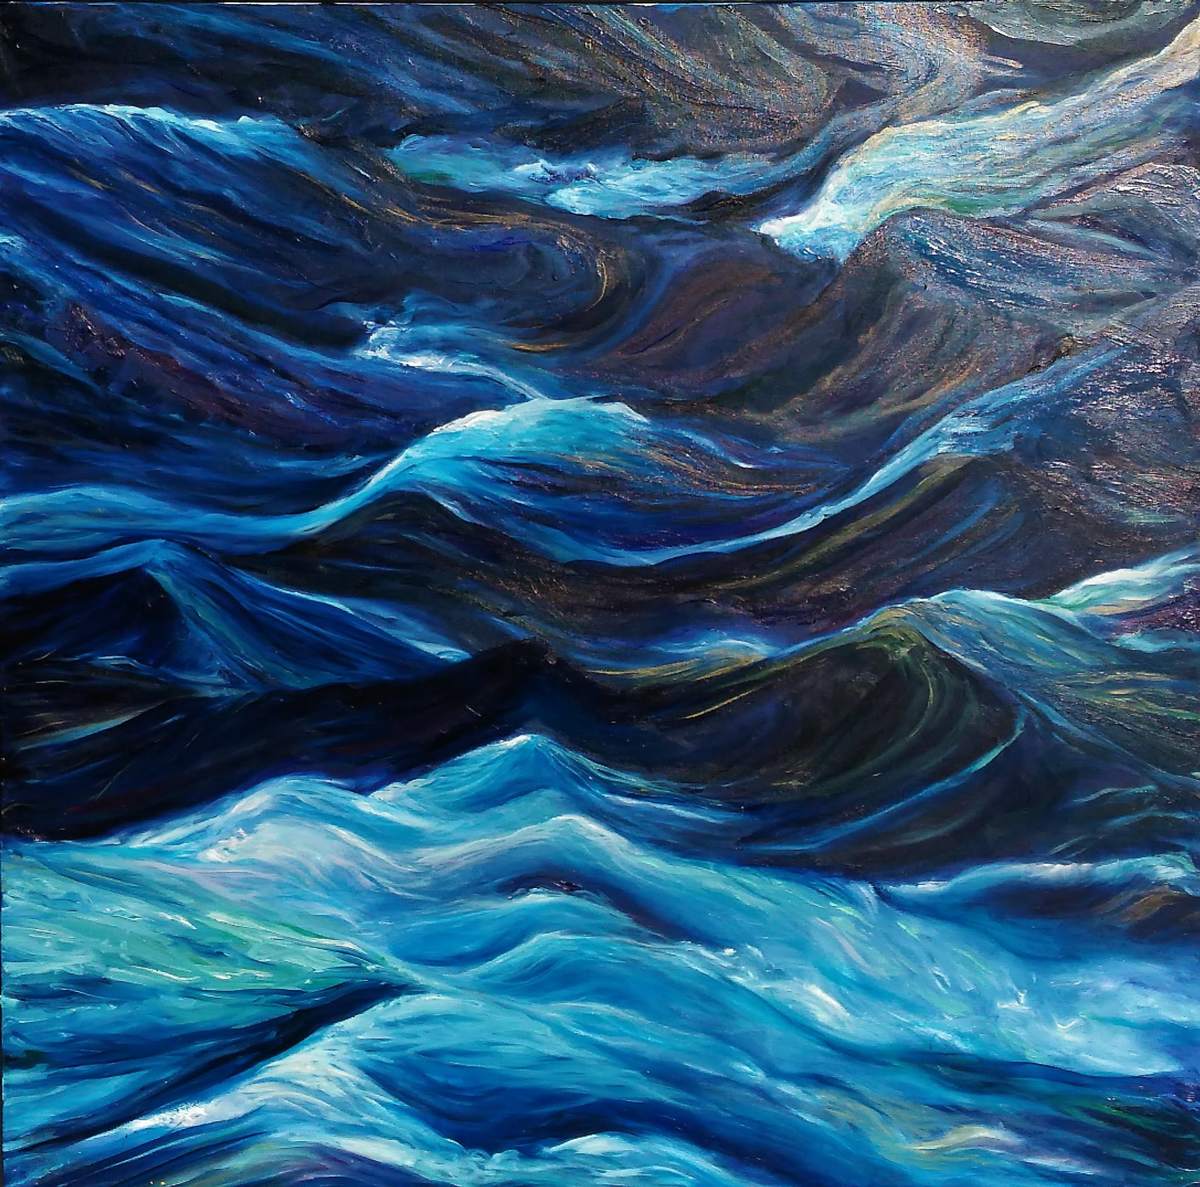  vagues-bleues-huile-sur-toile,Galerie de tableaux 2018,Artiste peintre
contemporain,artiste peintre Florence Gautier